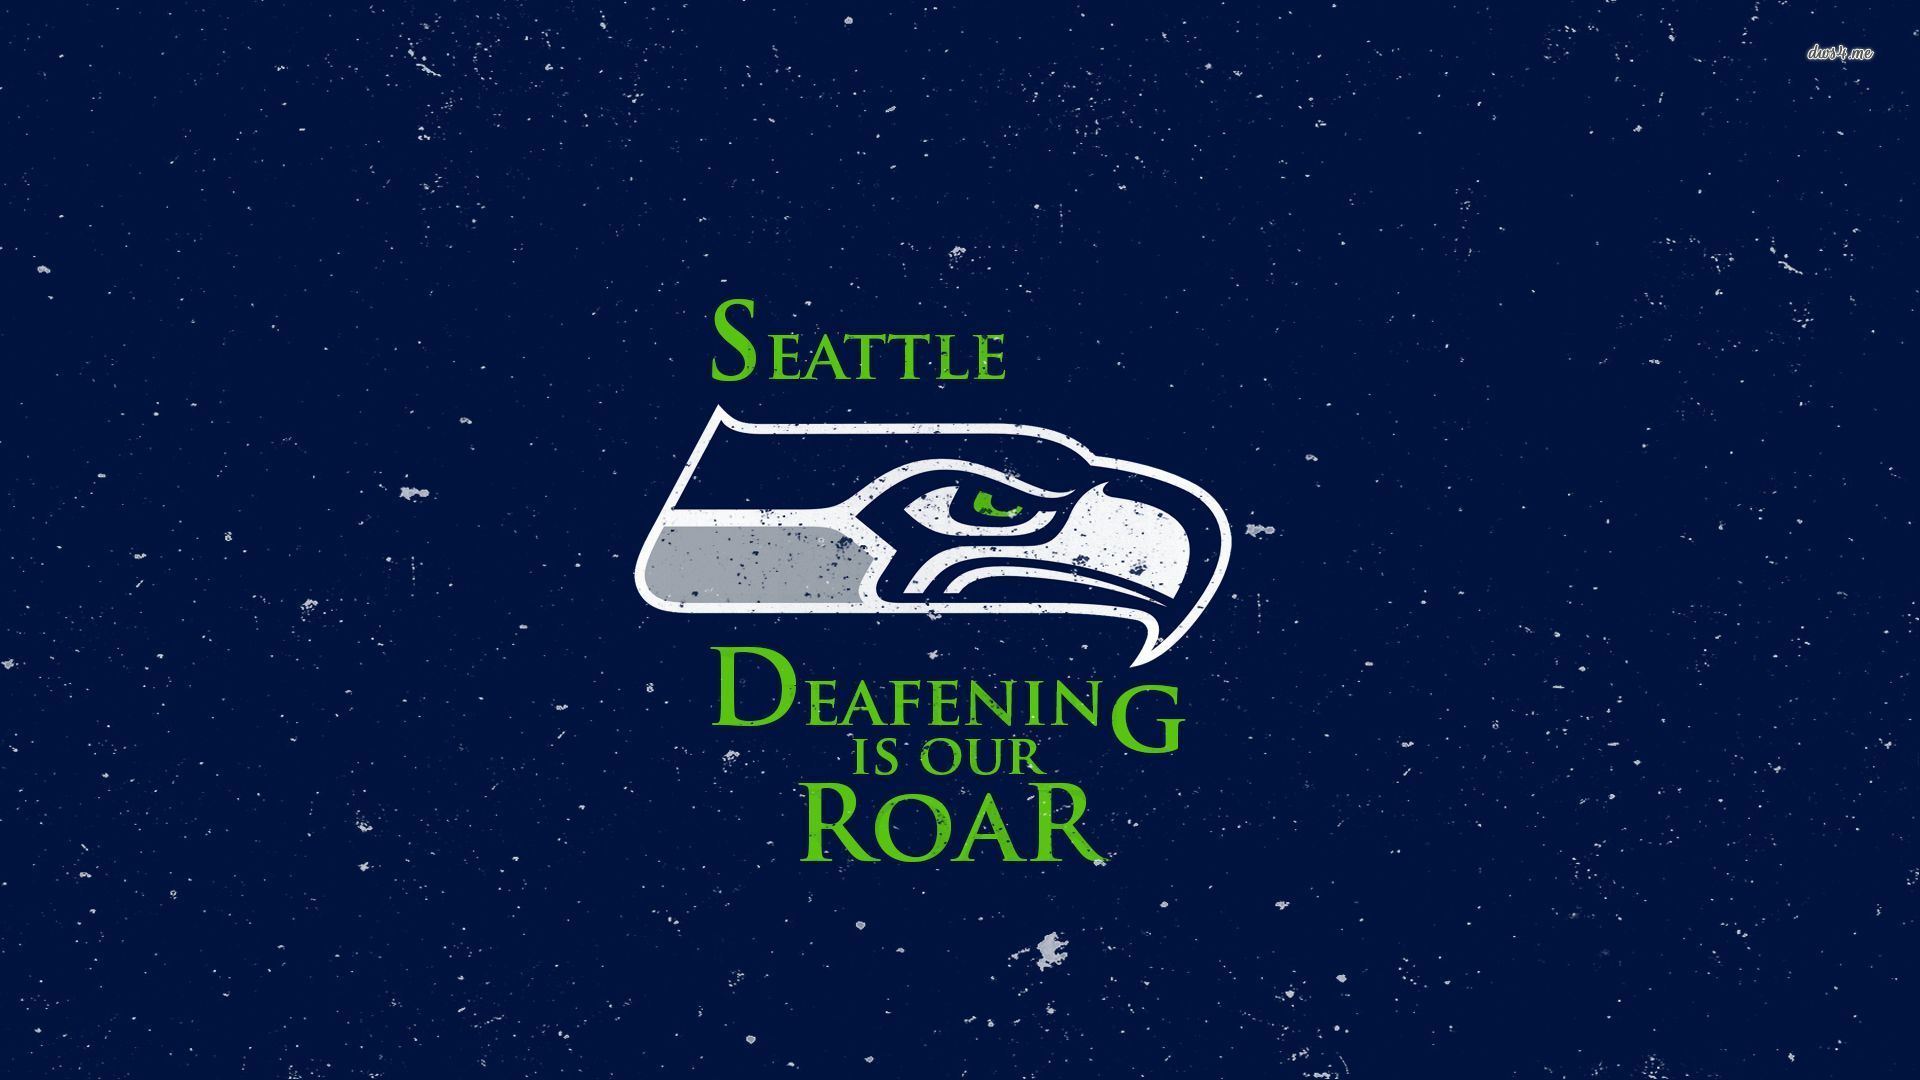 Seattle Seahawks wallpaper